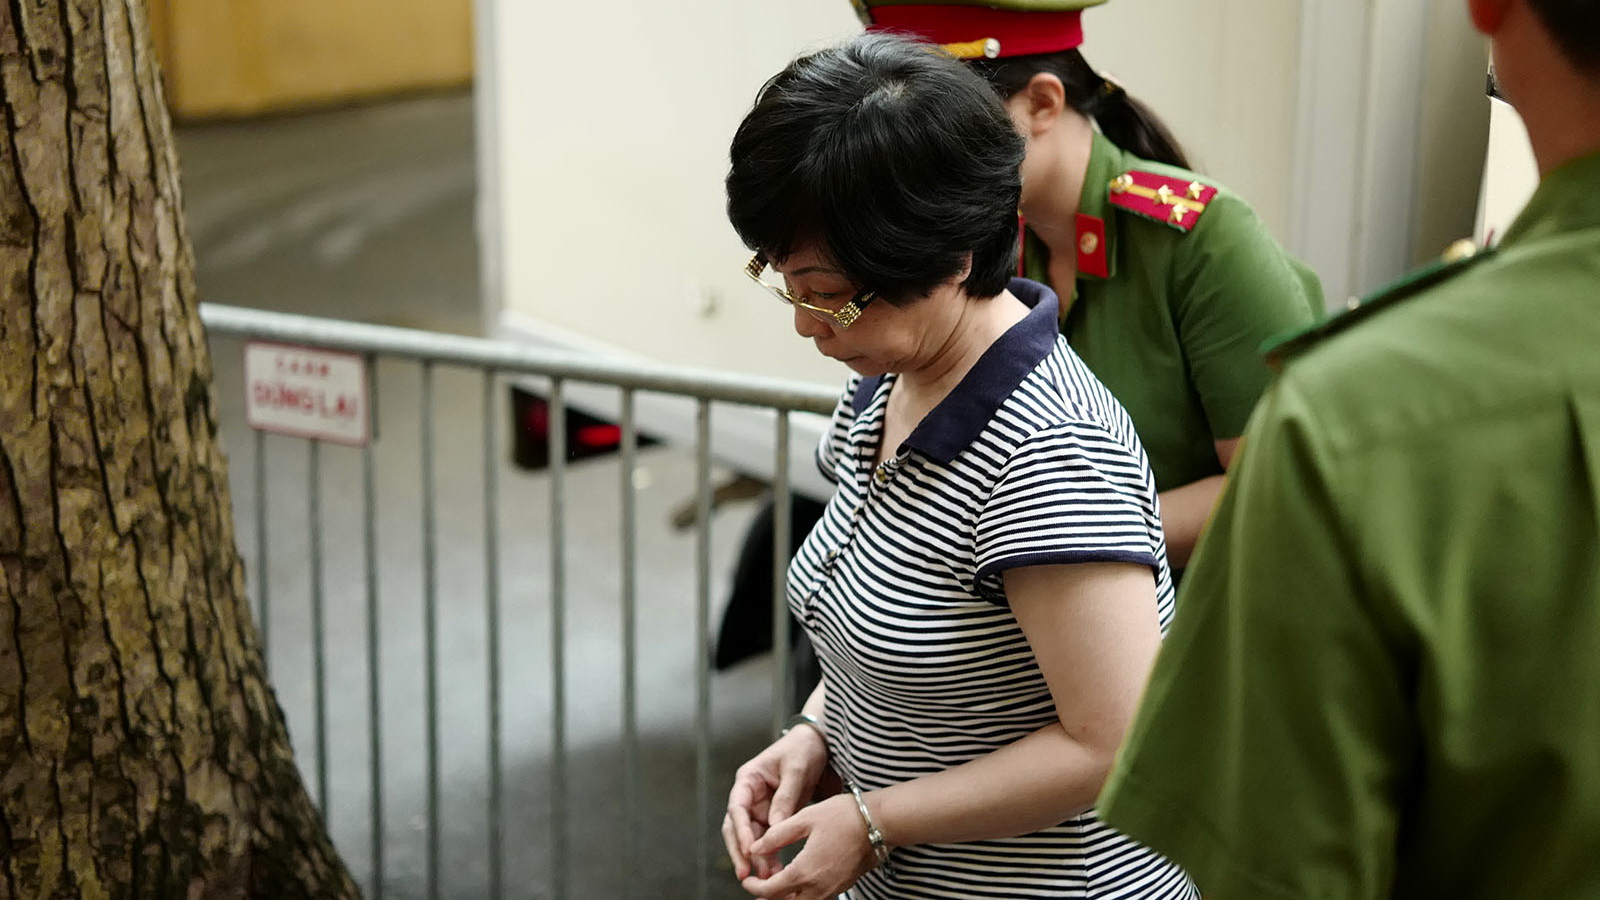 Former Vietnamese legislator sentenced to life in prison for fraud